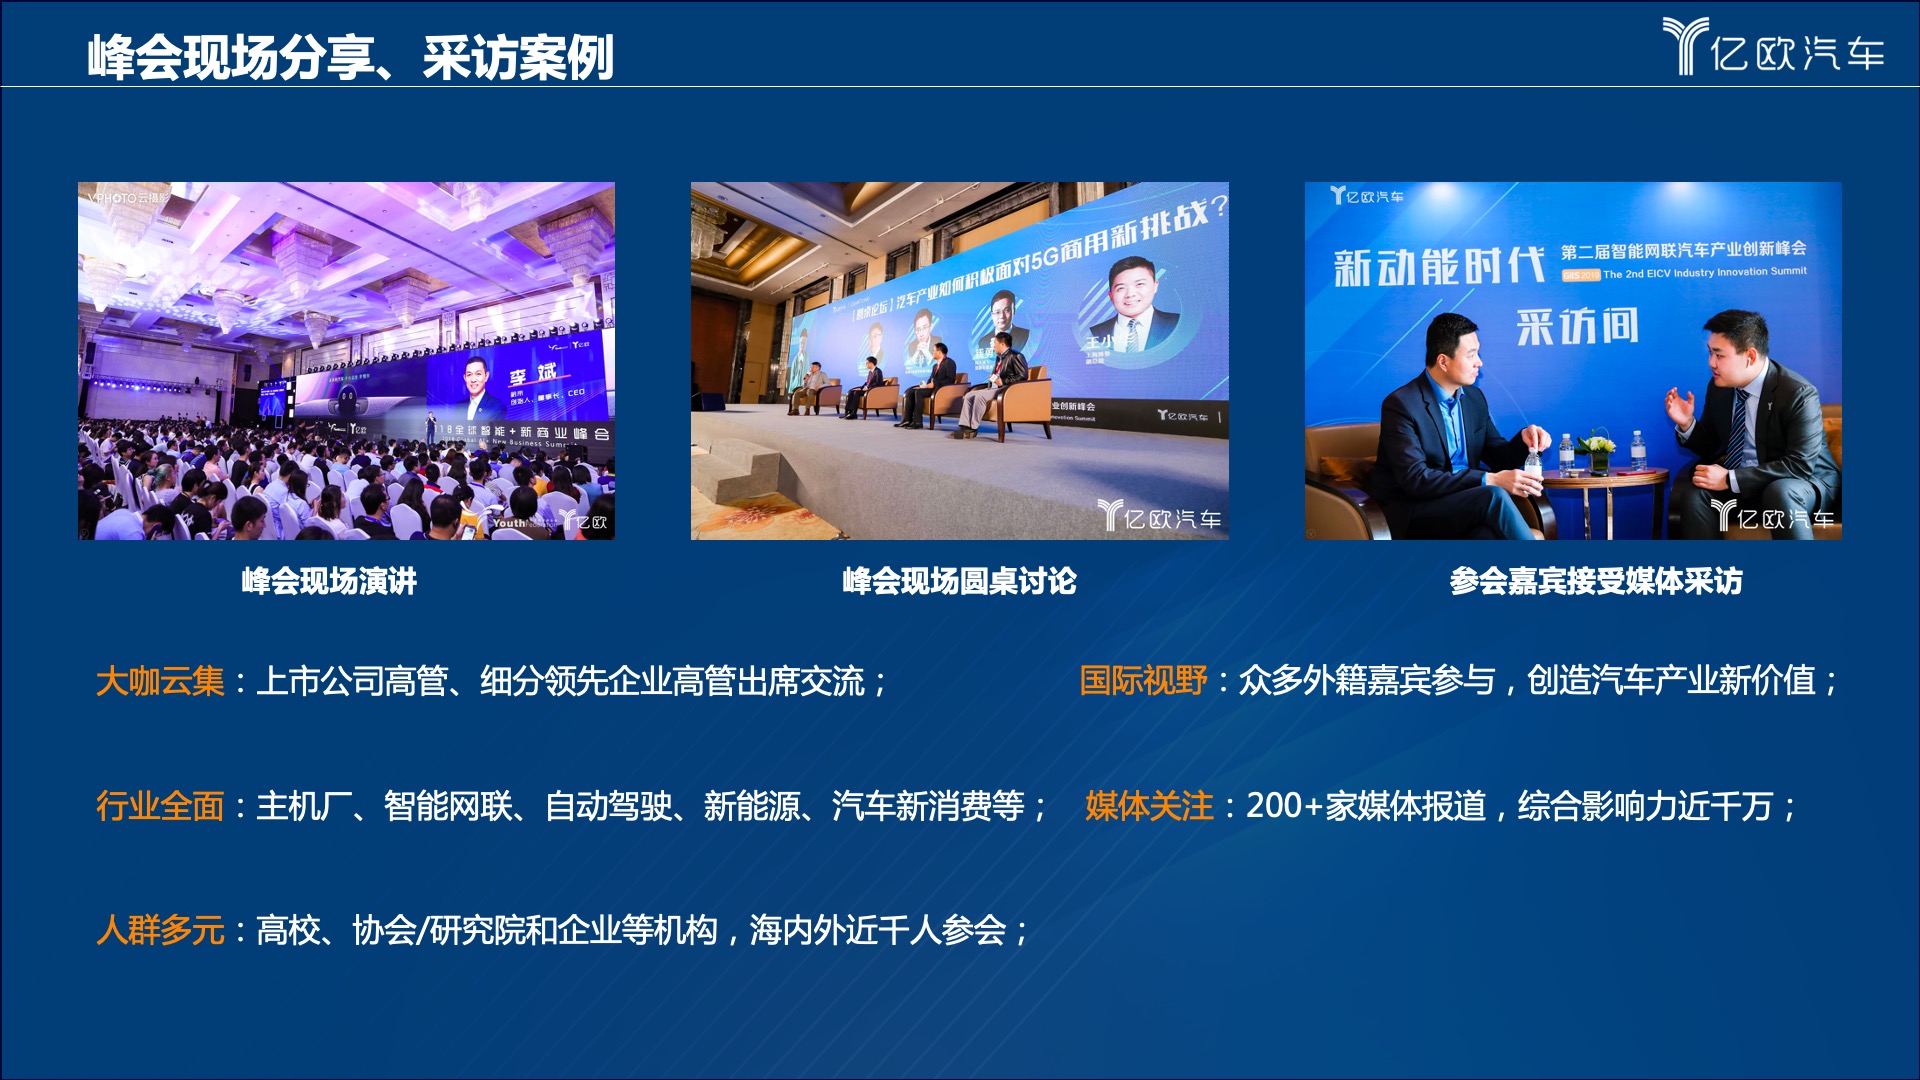 2020全球科技出行峰会—GTM2020（北京）